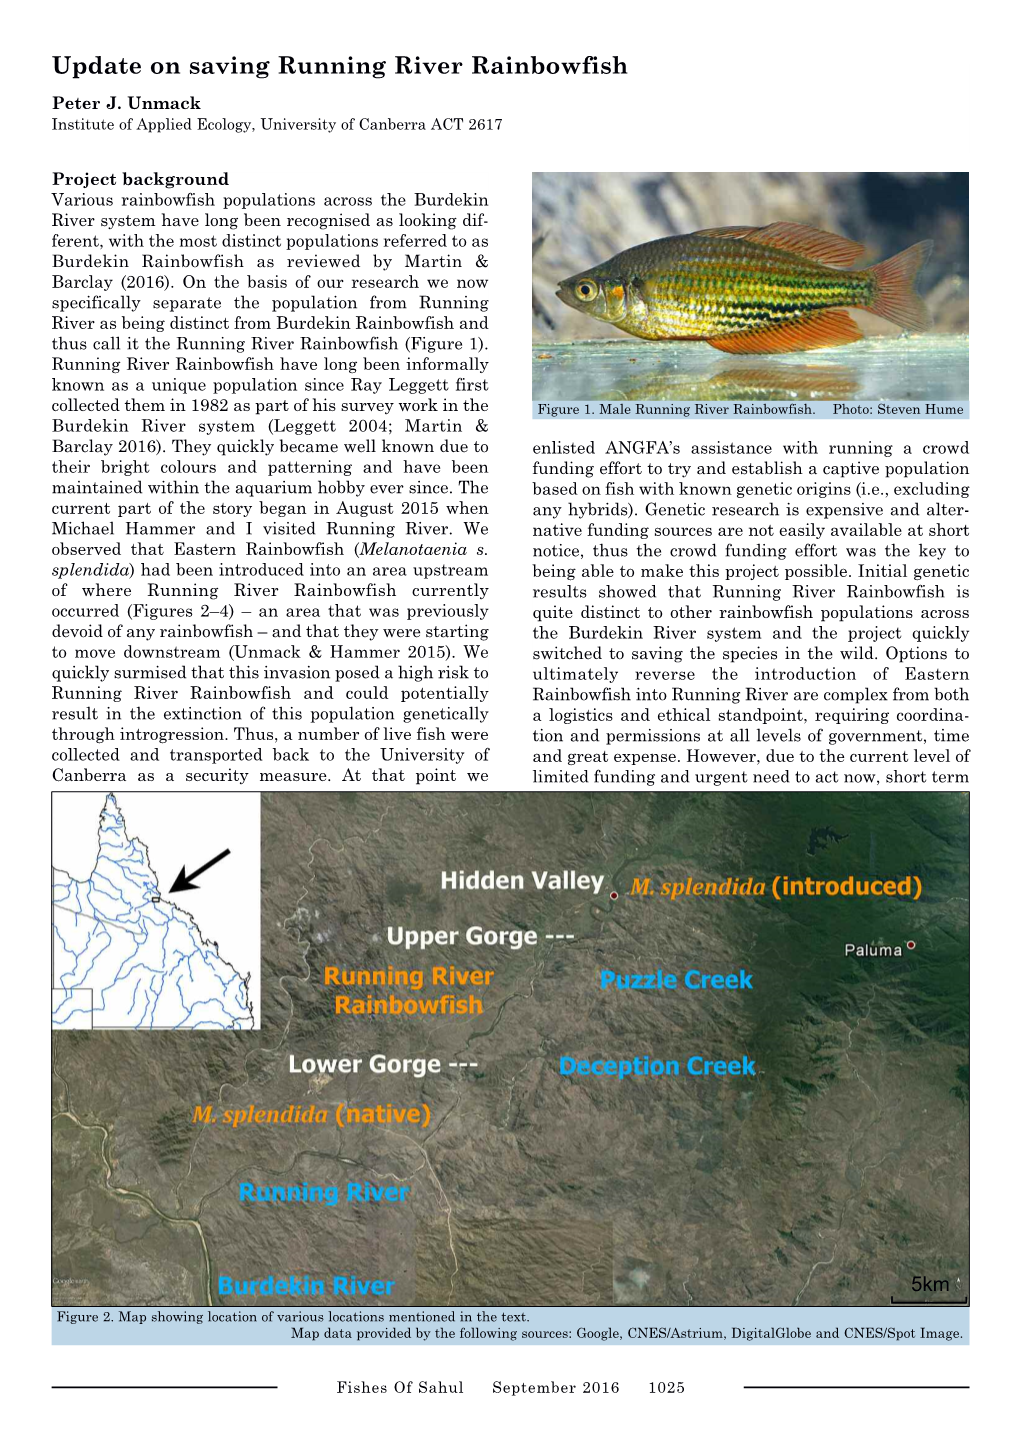 Update on Saving Running River Rainbowfish Peter J